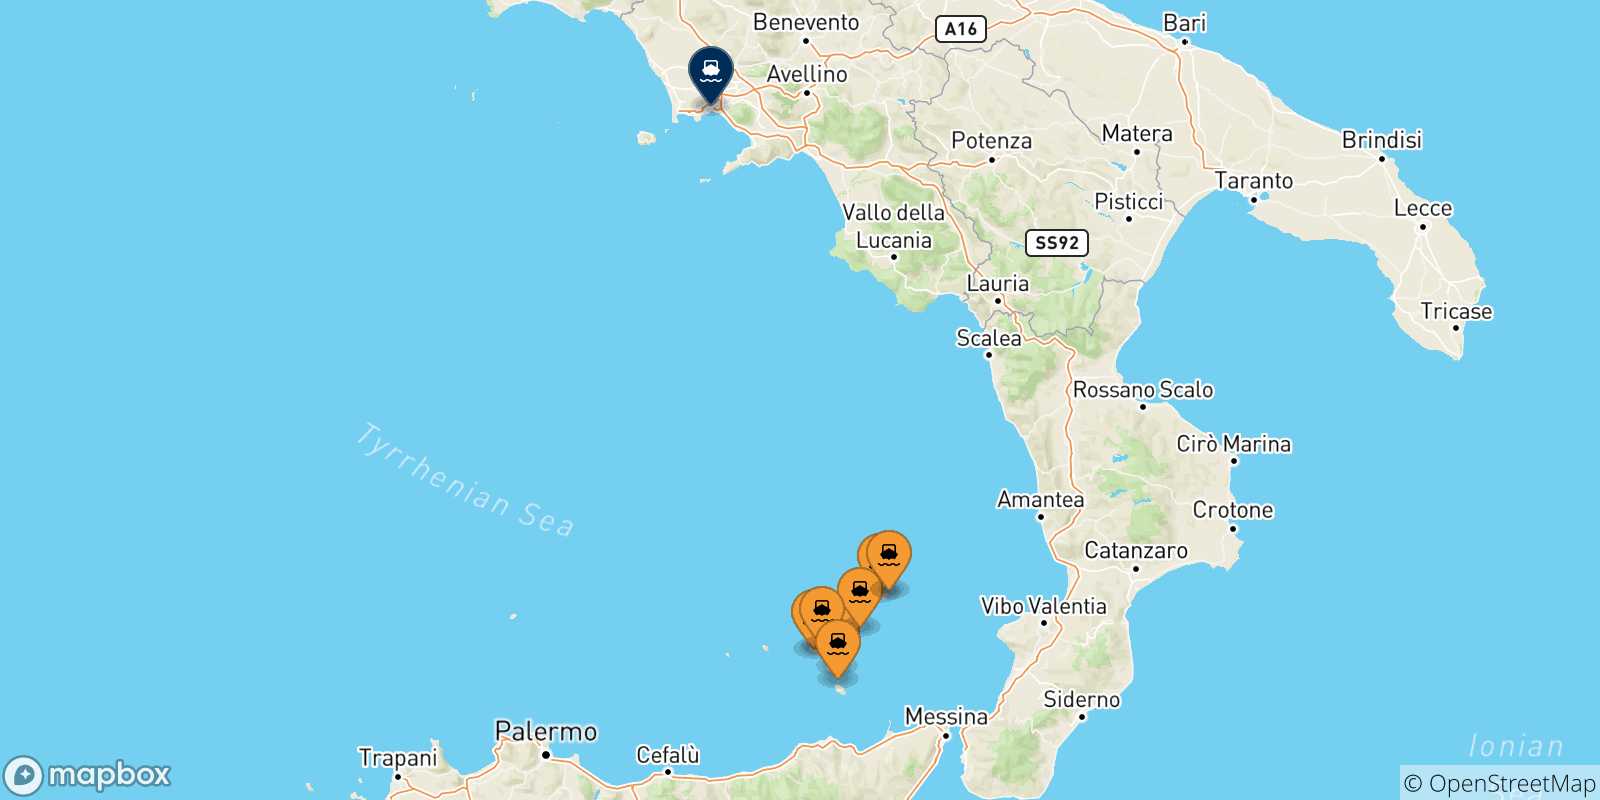 Mappa delle possibili rotte tra le Isole Eolie e Napoli